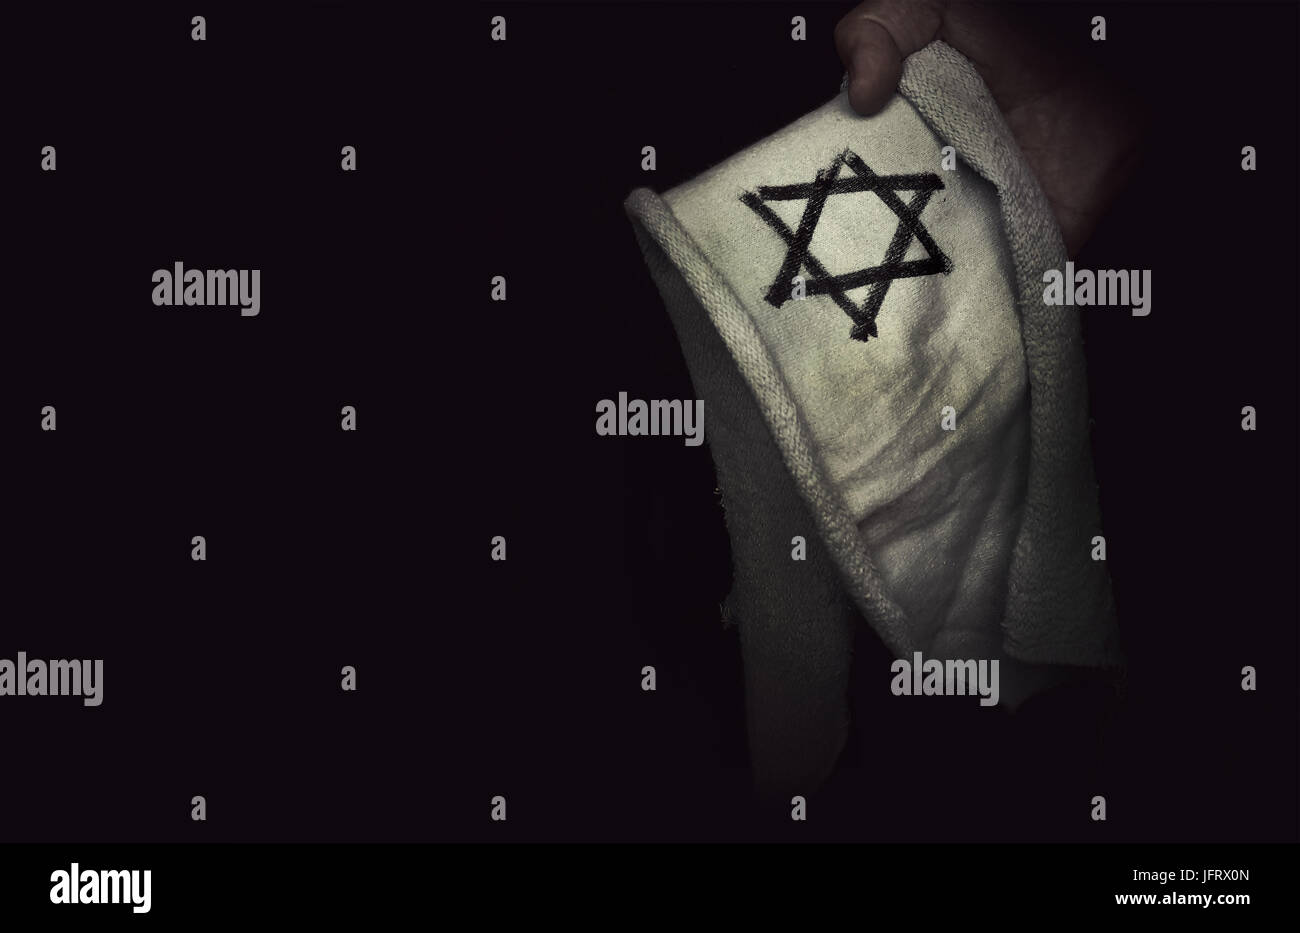 Nahaufnahme der jüdischen Abzeichen Stern von David in der Hand. Das Konzept der Erinnerung an den Völkermord an den Juden durch die Nazis während des zweiten Weltkriegs. Stockfoto